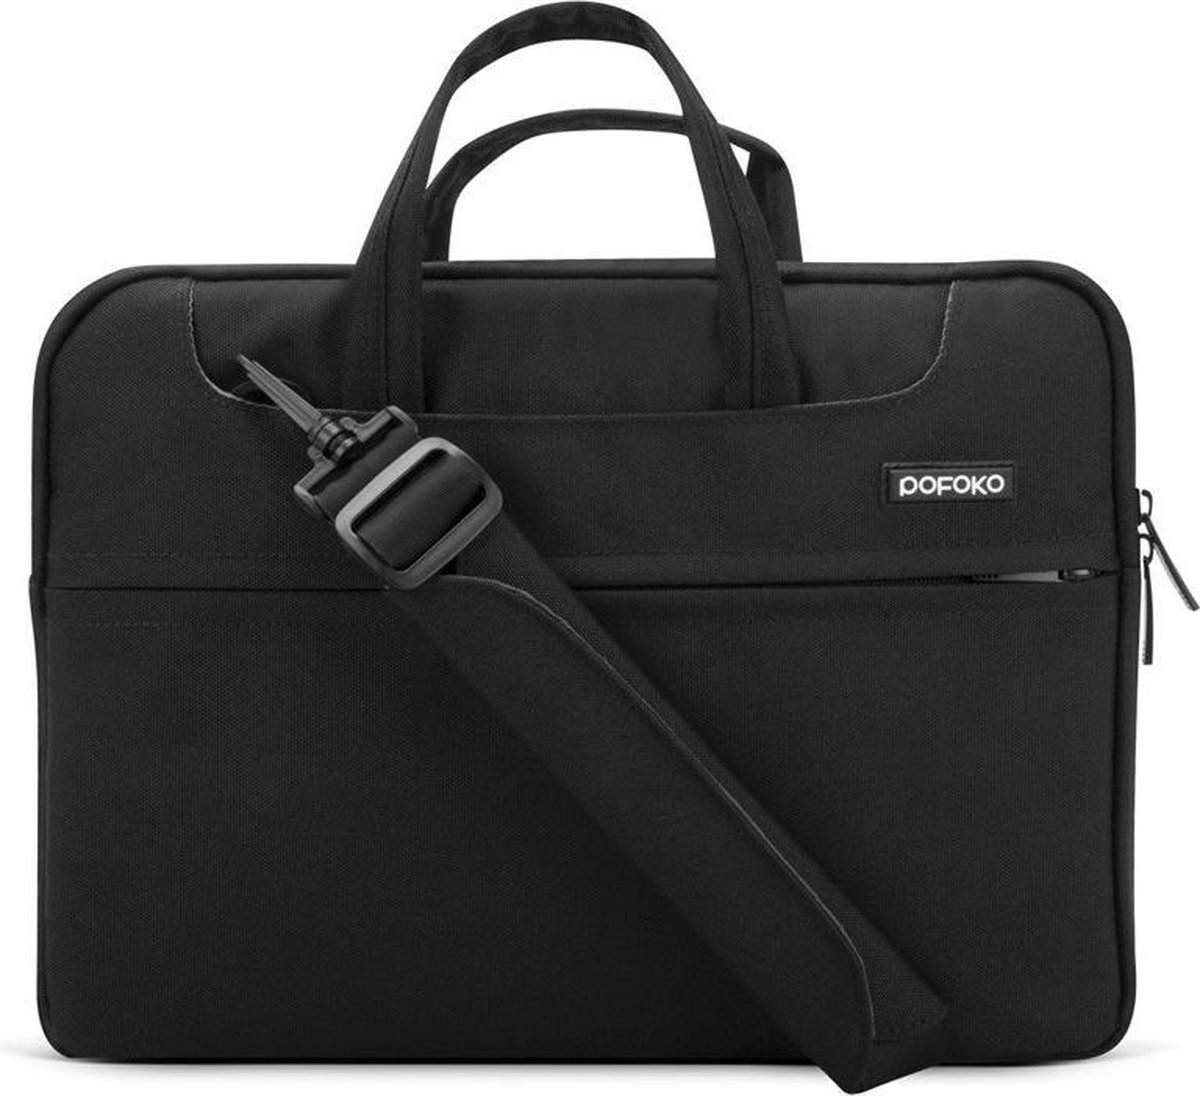 POFOKO 15.4 inch laptoptas met schouderband - Zwart